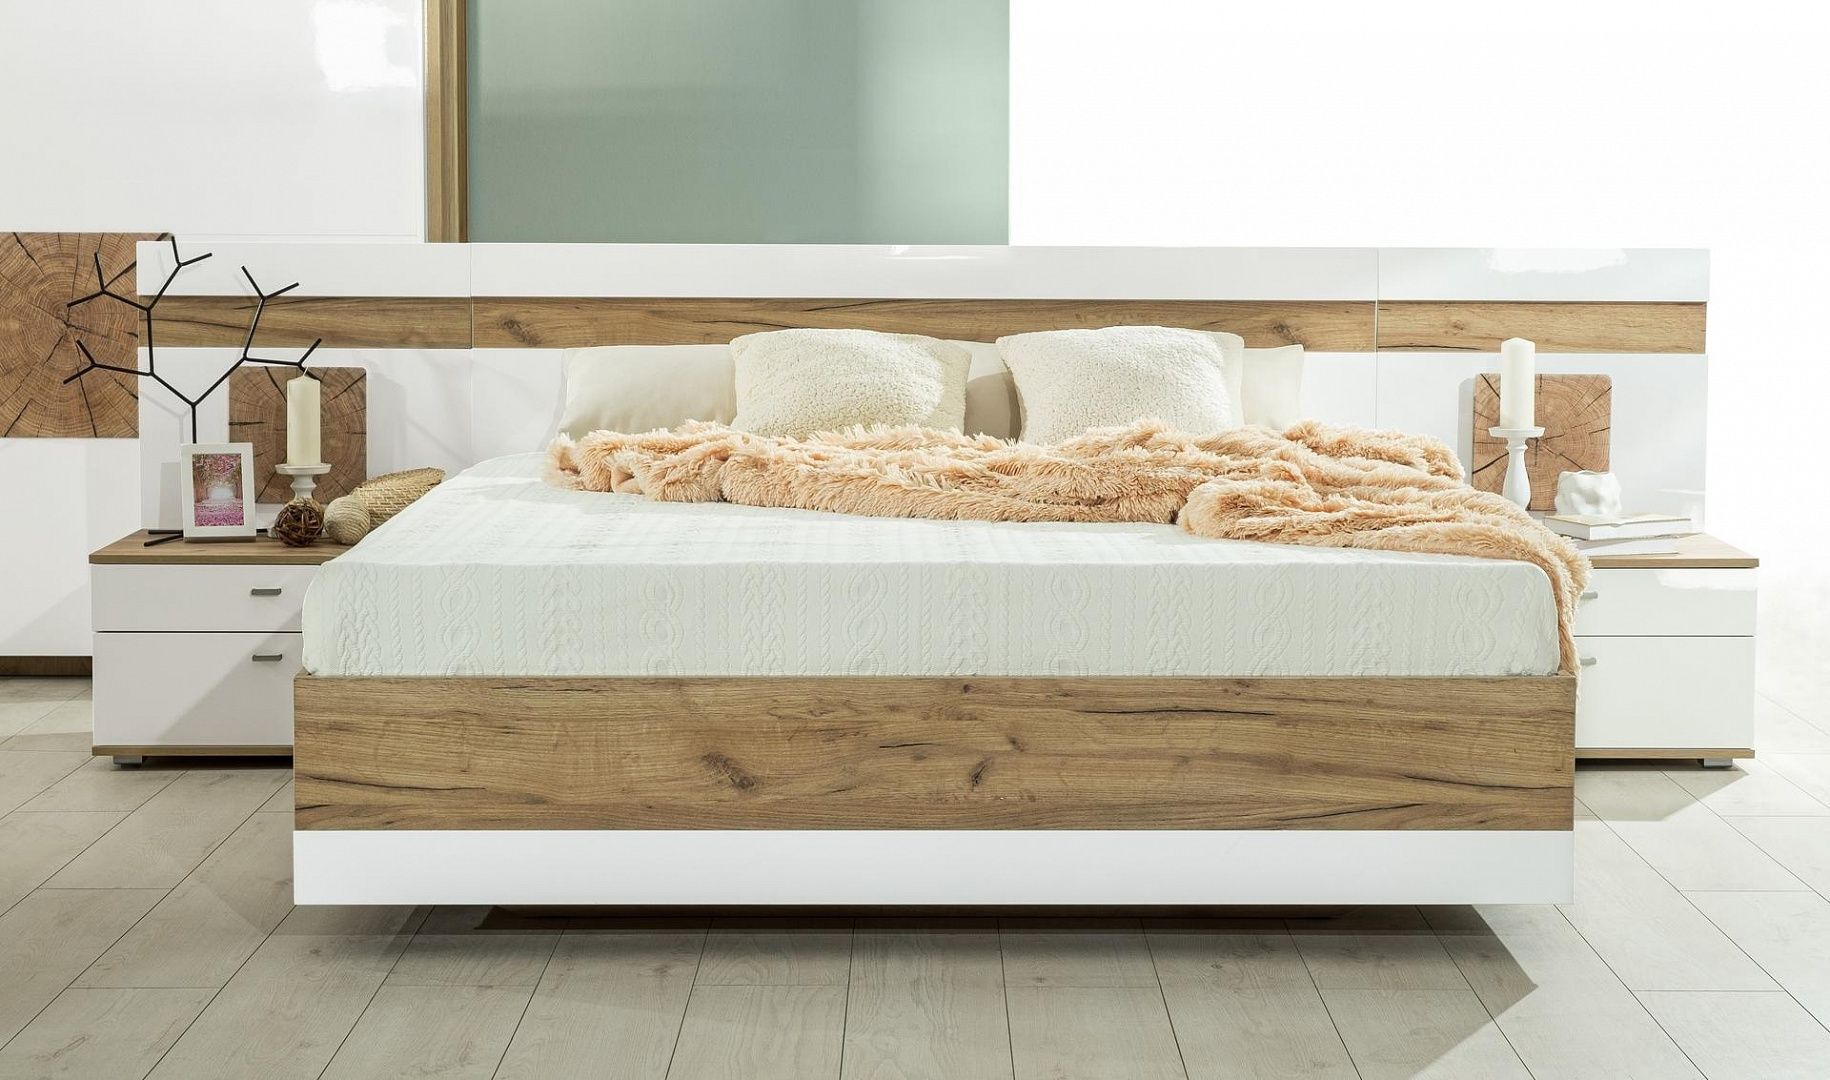 Manželská postel Markus 160x200cm - bílý lesk/dub zlatý - Nábytek Harmonia s.r.o.